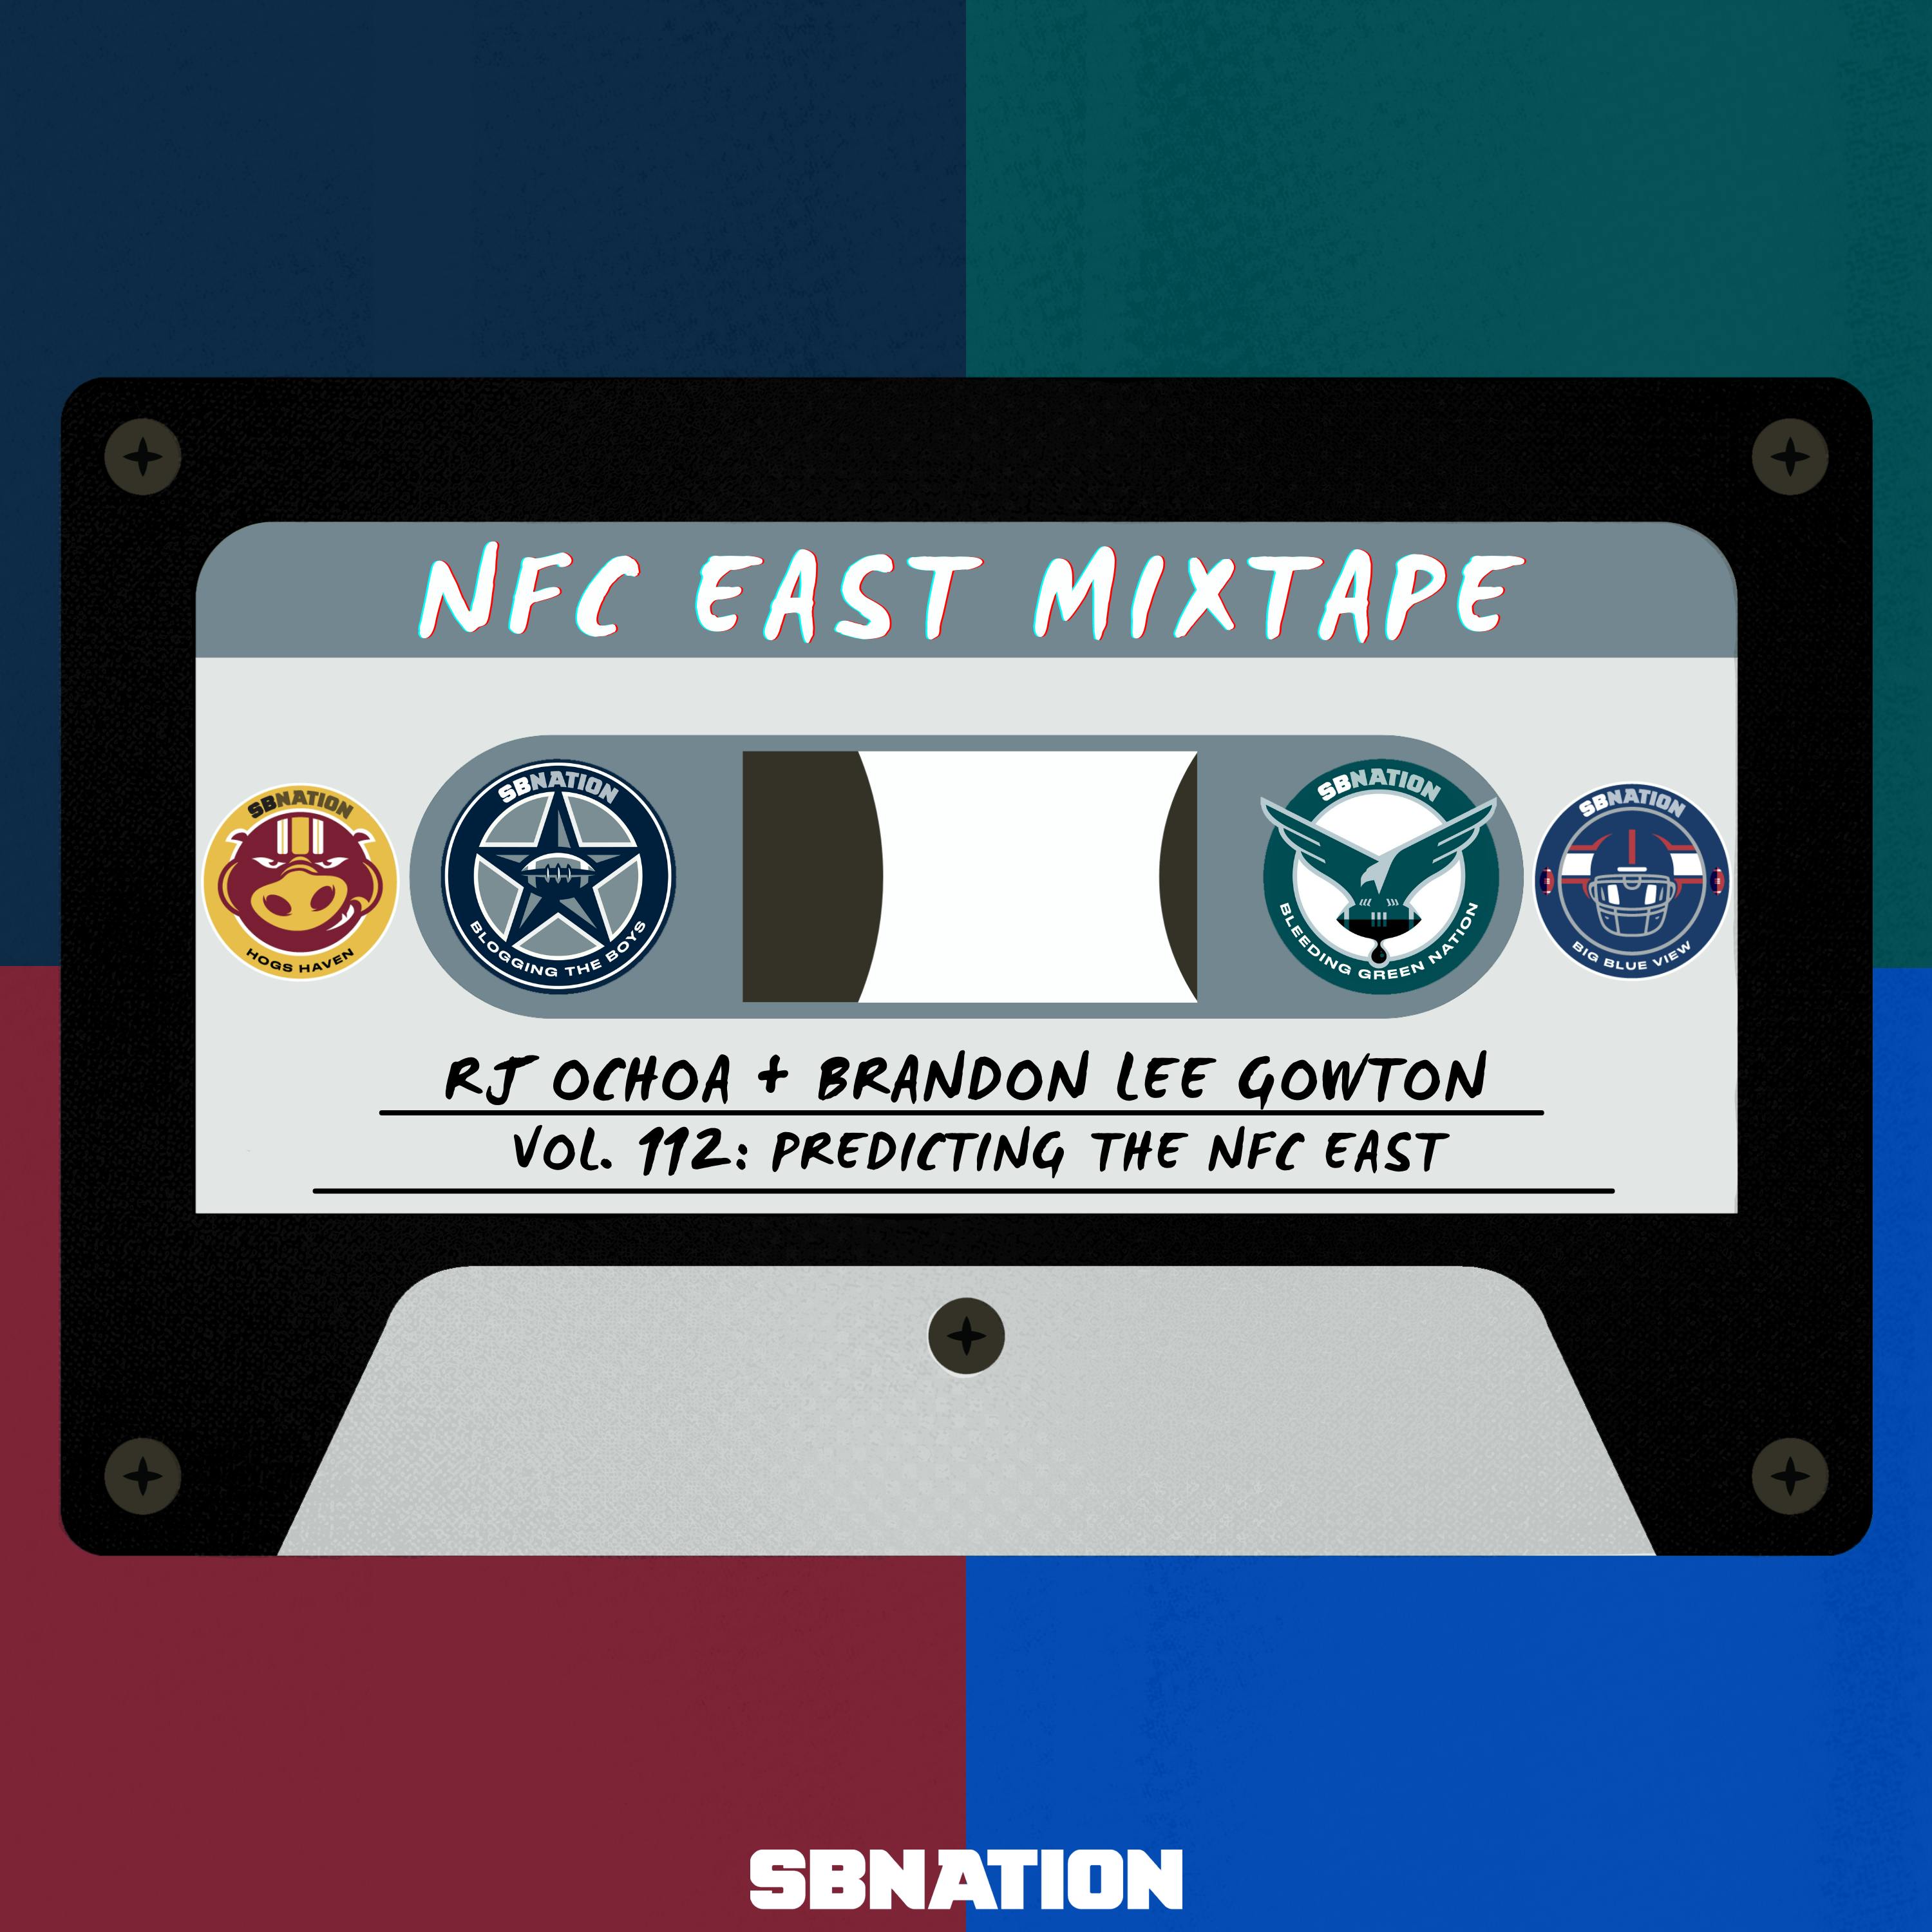 NFC East Mixtape Vol. 112: Predicting the NFC East